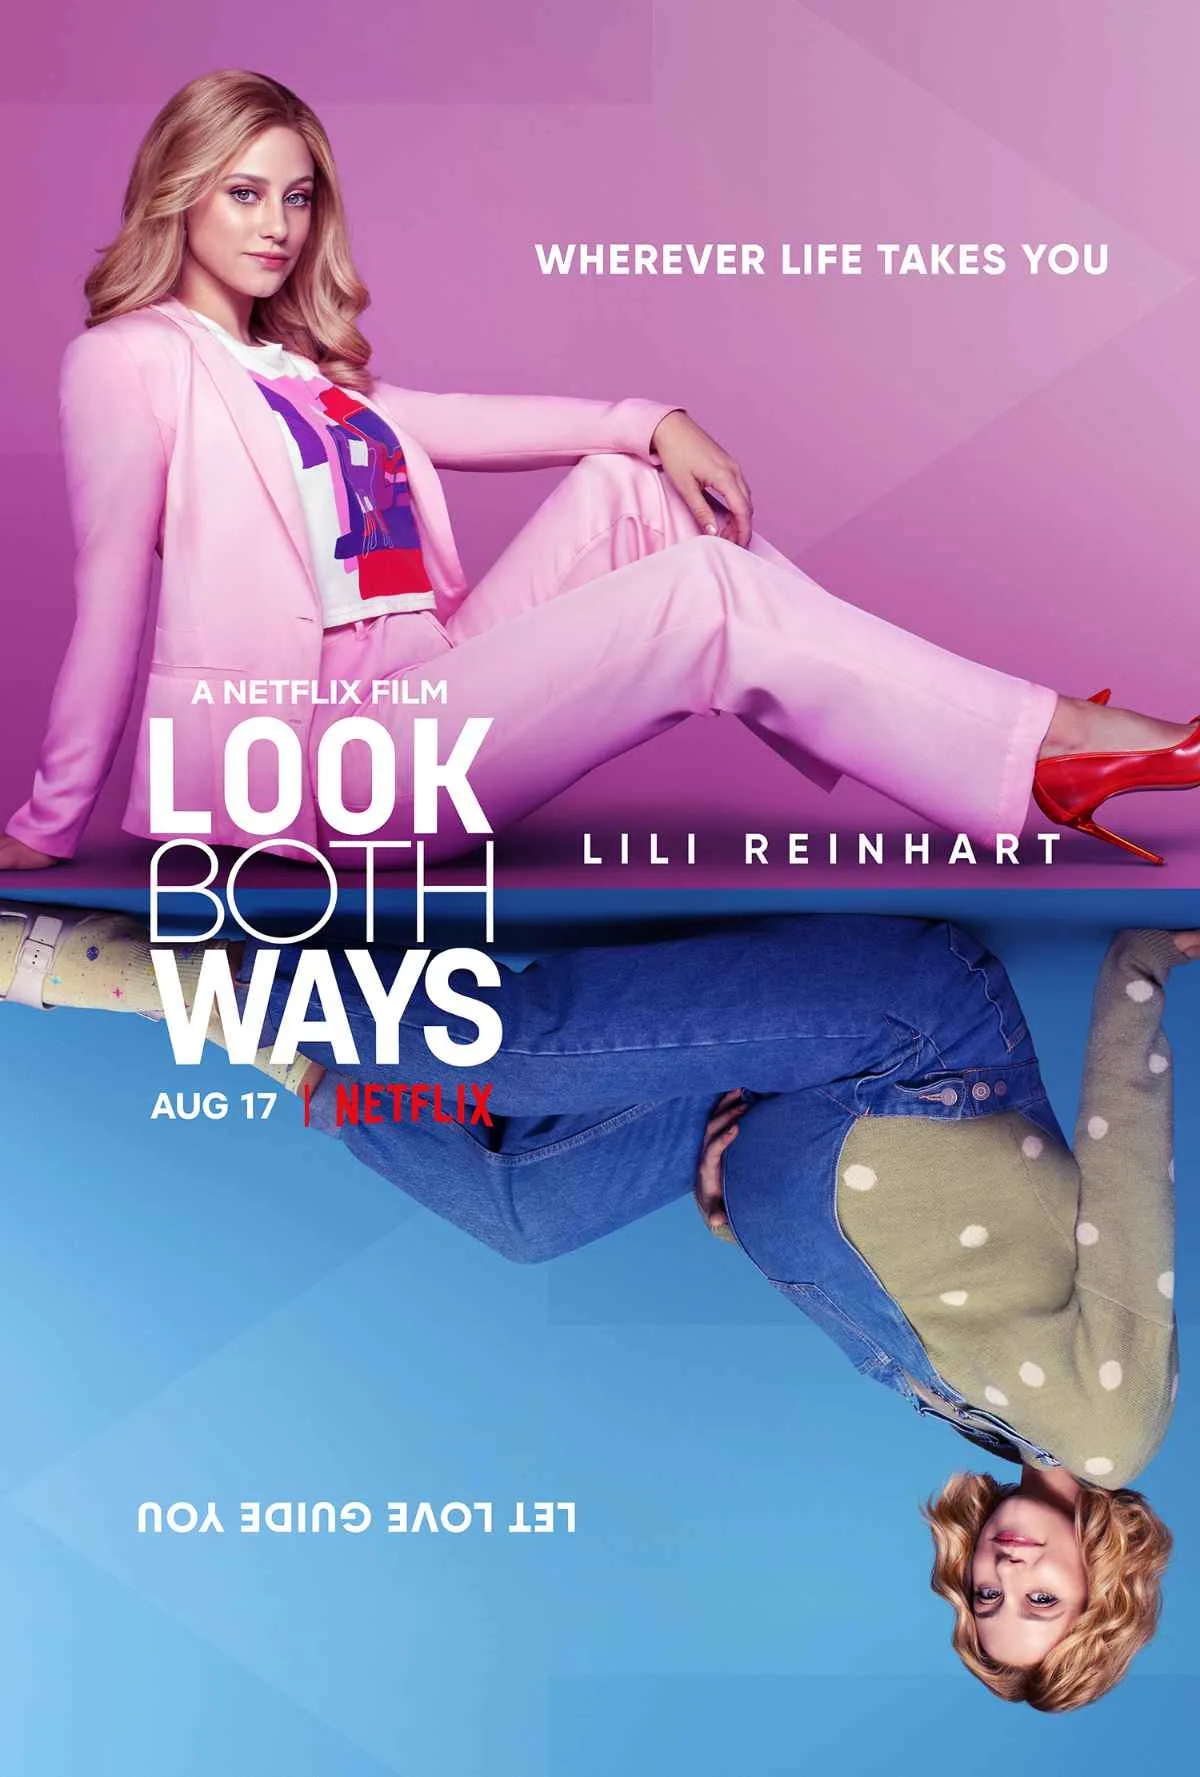 Lili Reinhart in Look Both Ways